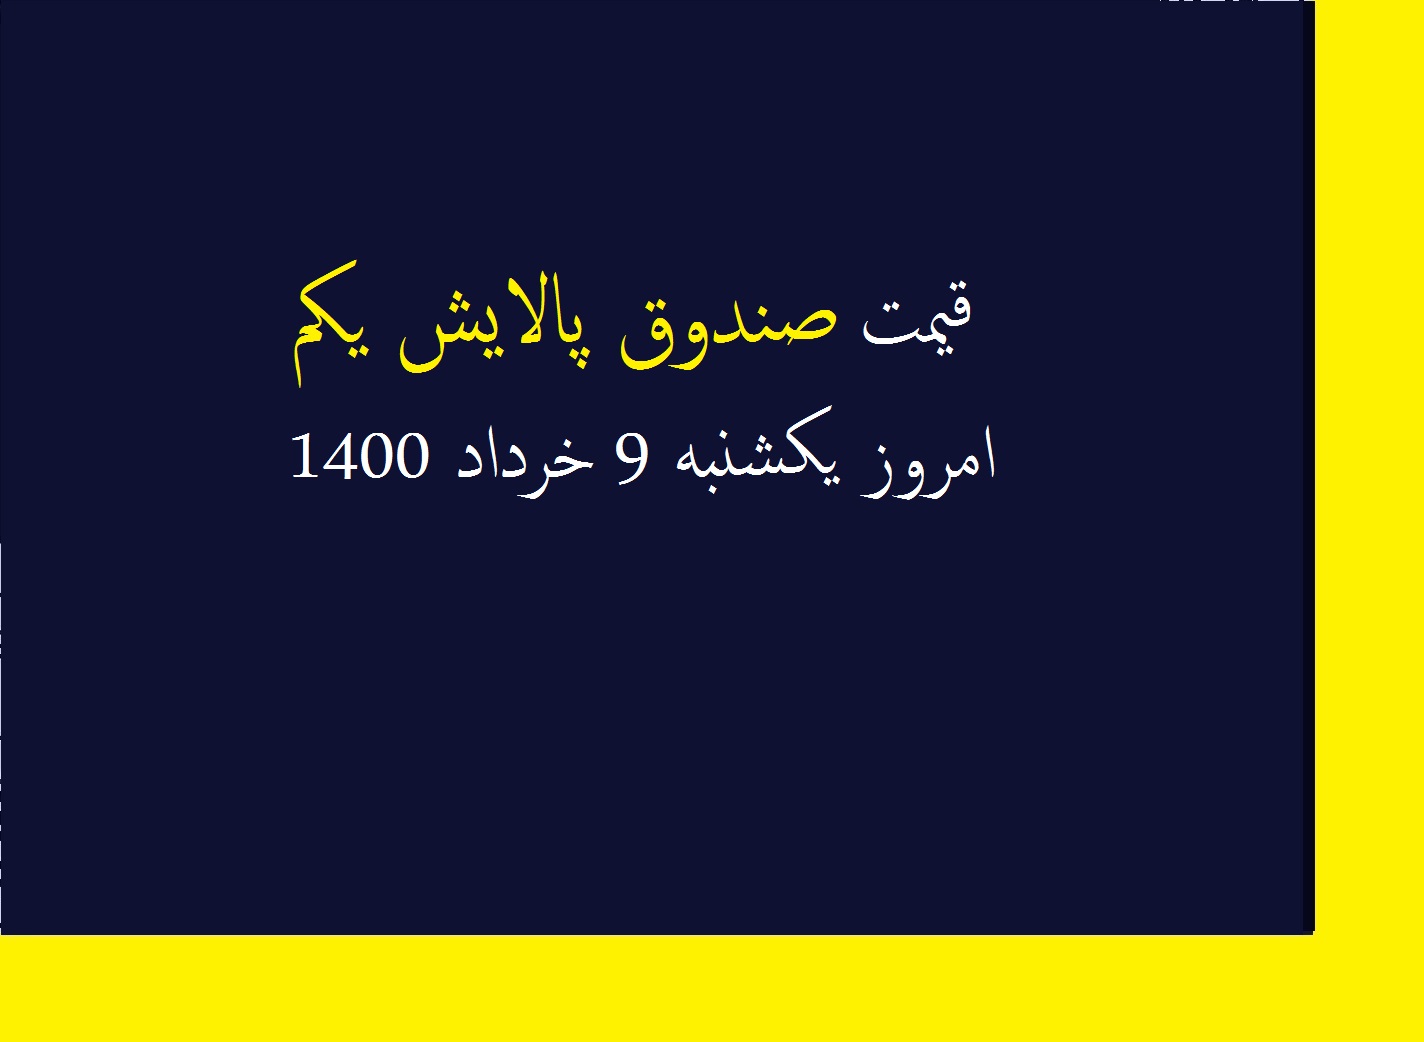 قیمت صندوق پالایش یکم امروز یکشنبه 9 خرداد 1400